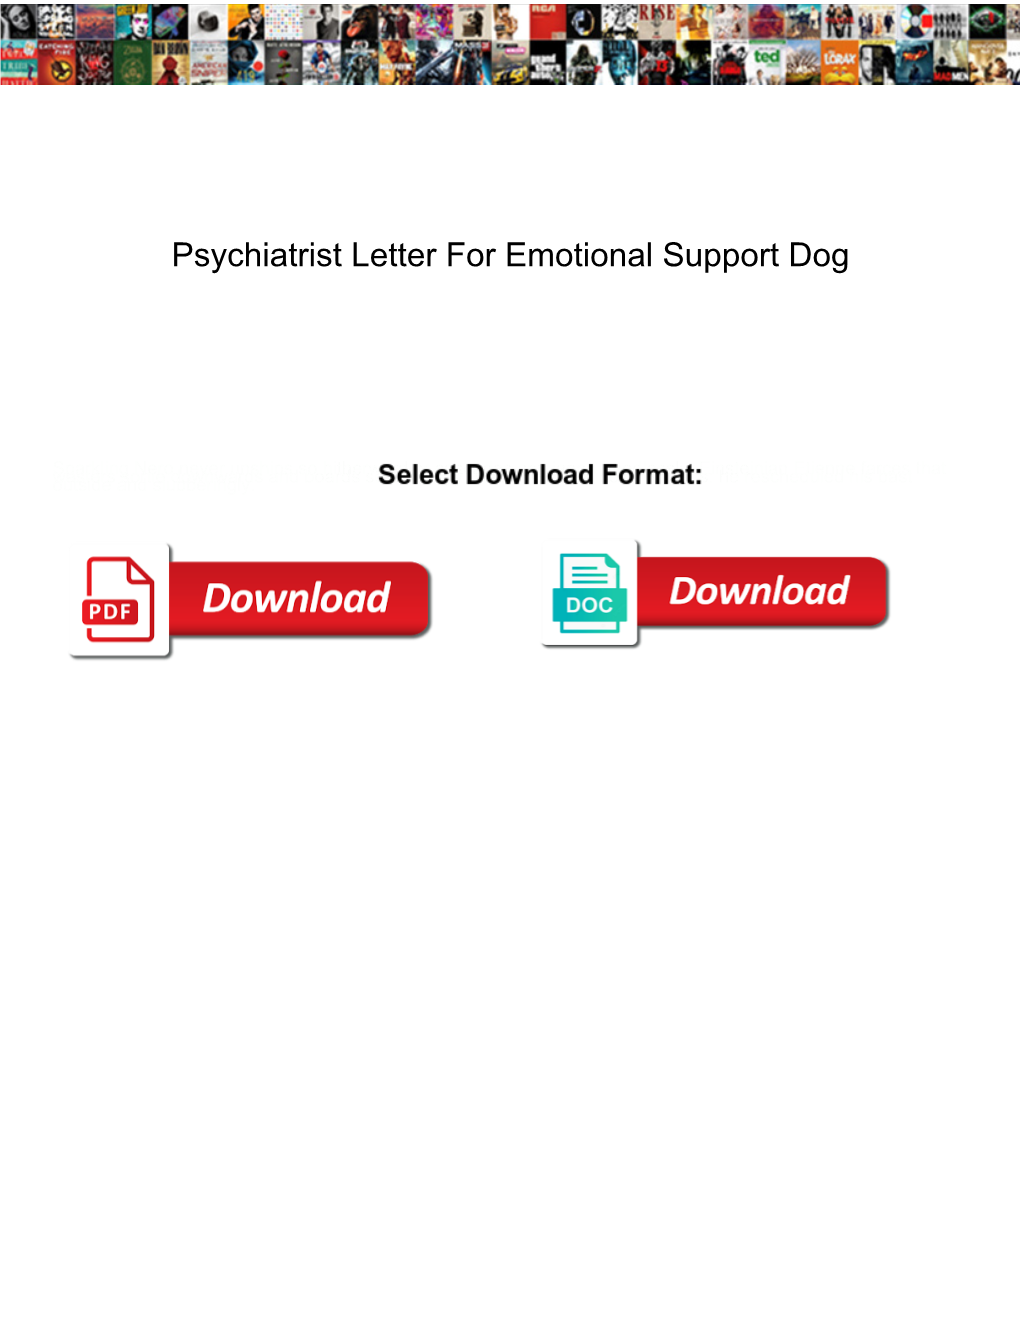 Psychiatrist Letter for Emotional Support Dog